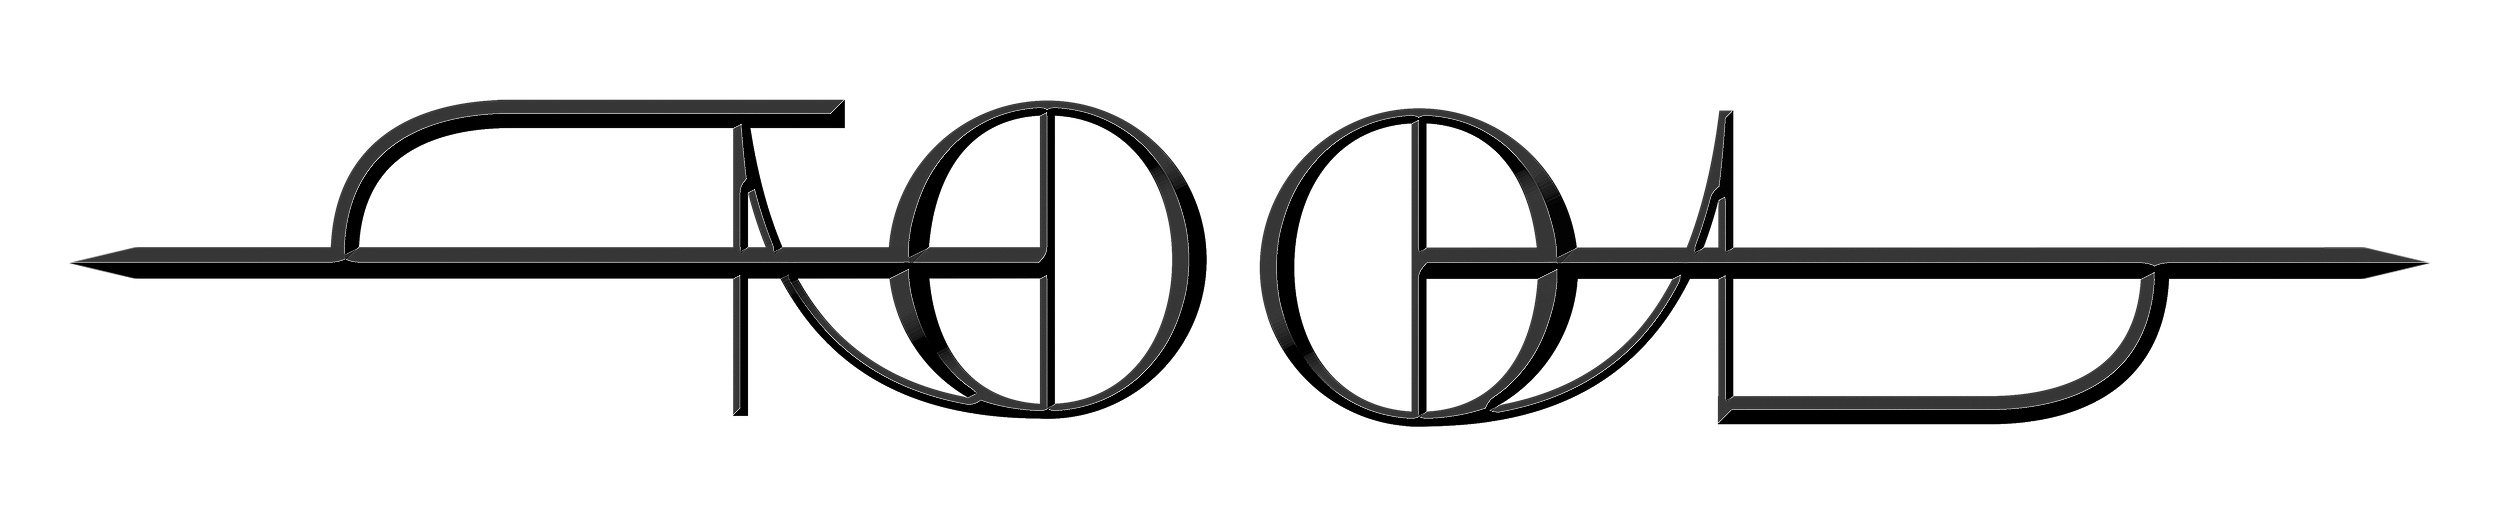 Tool_Lanyard_Logo.jpg